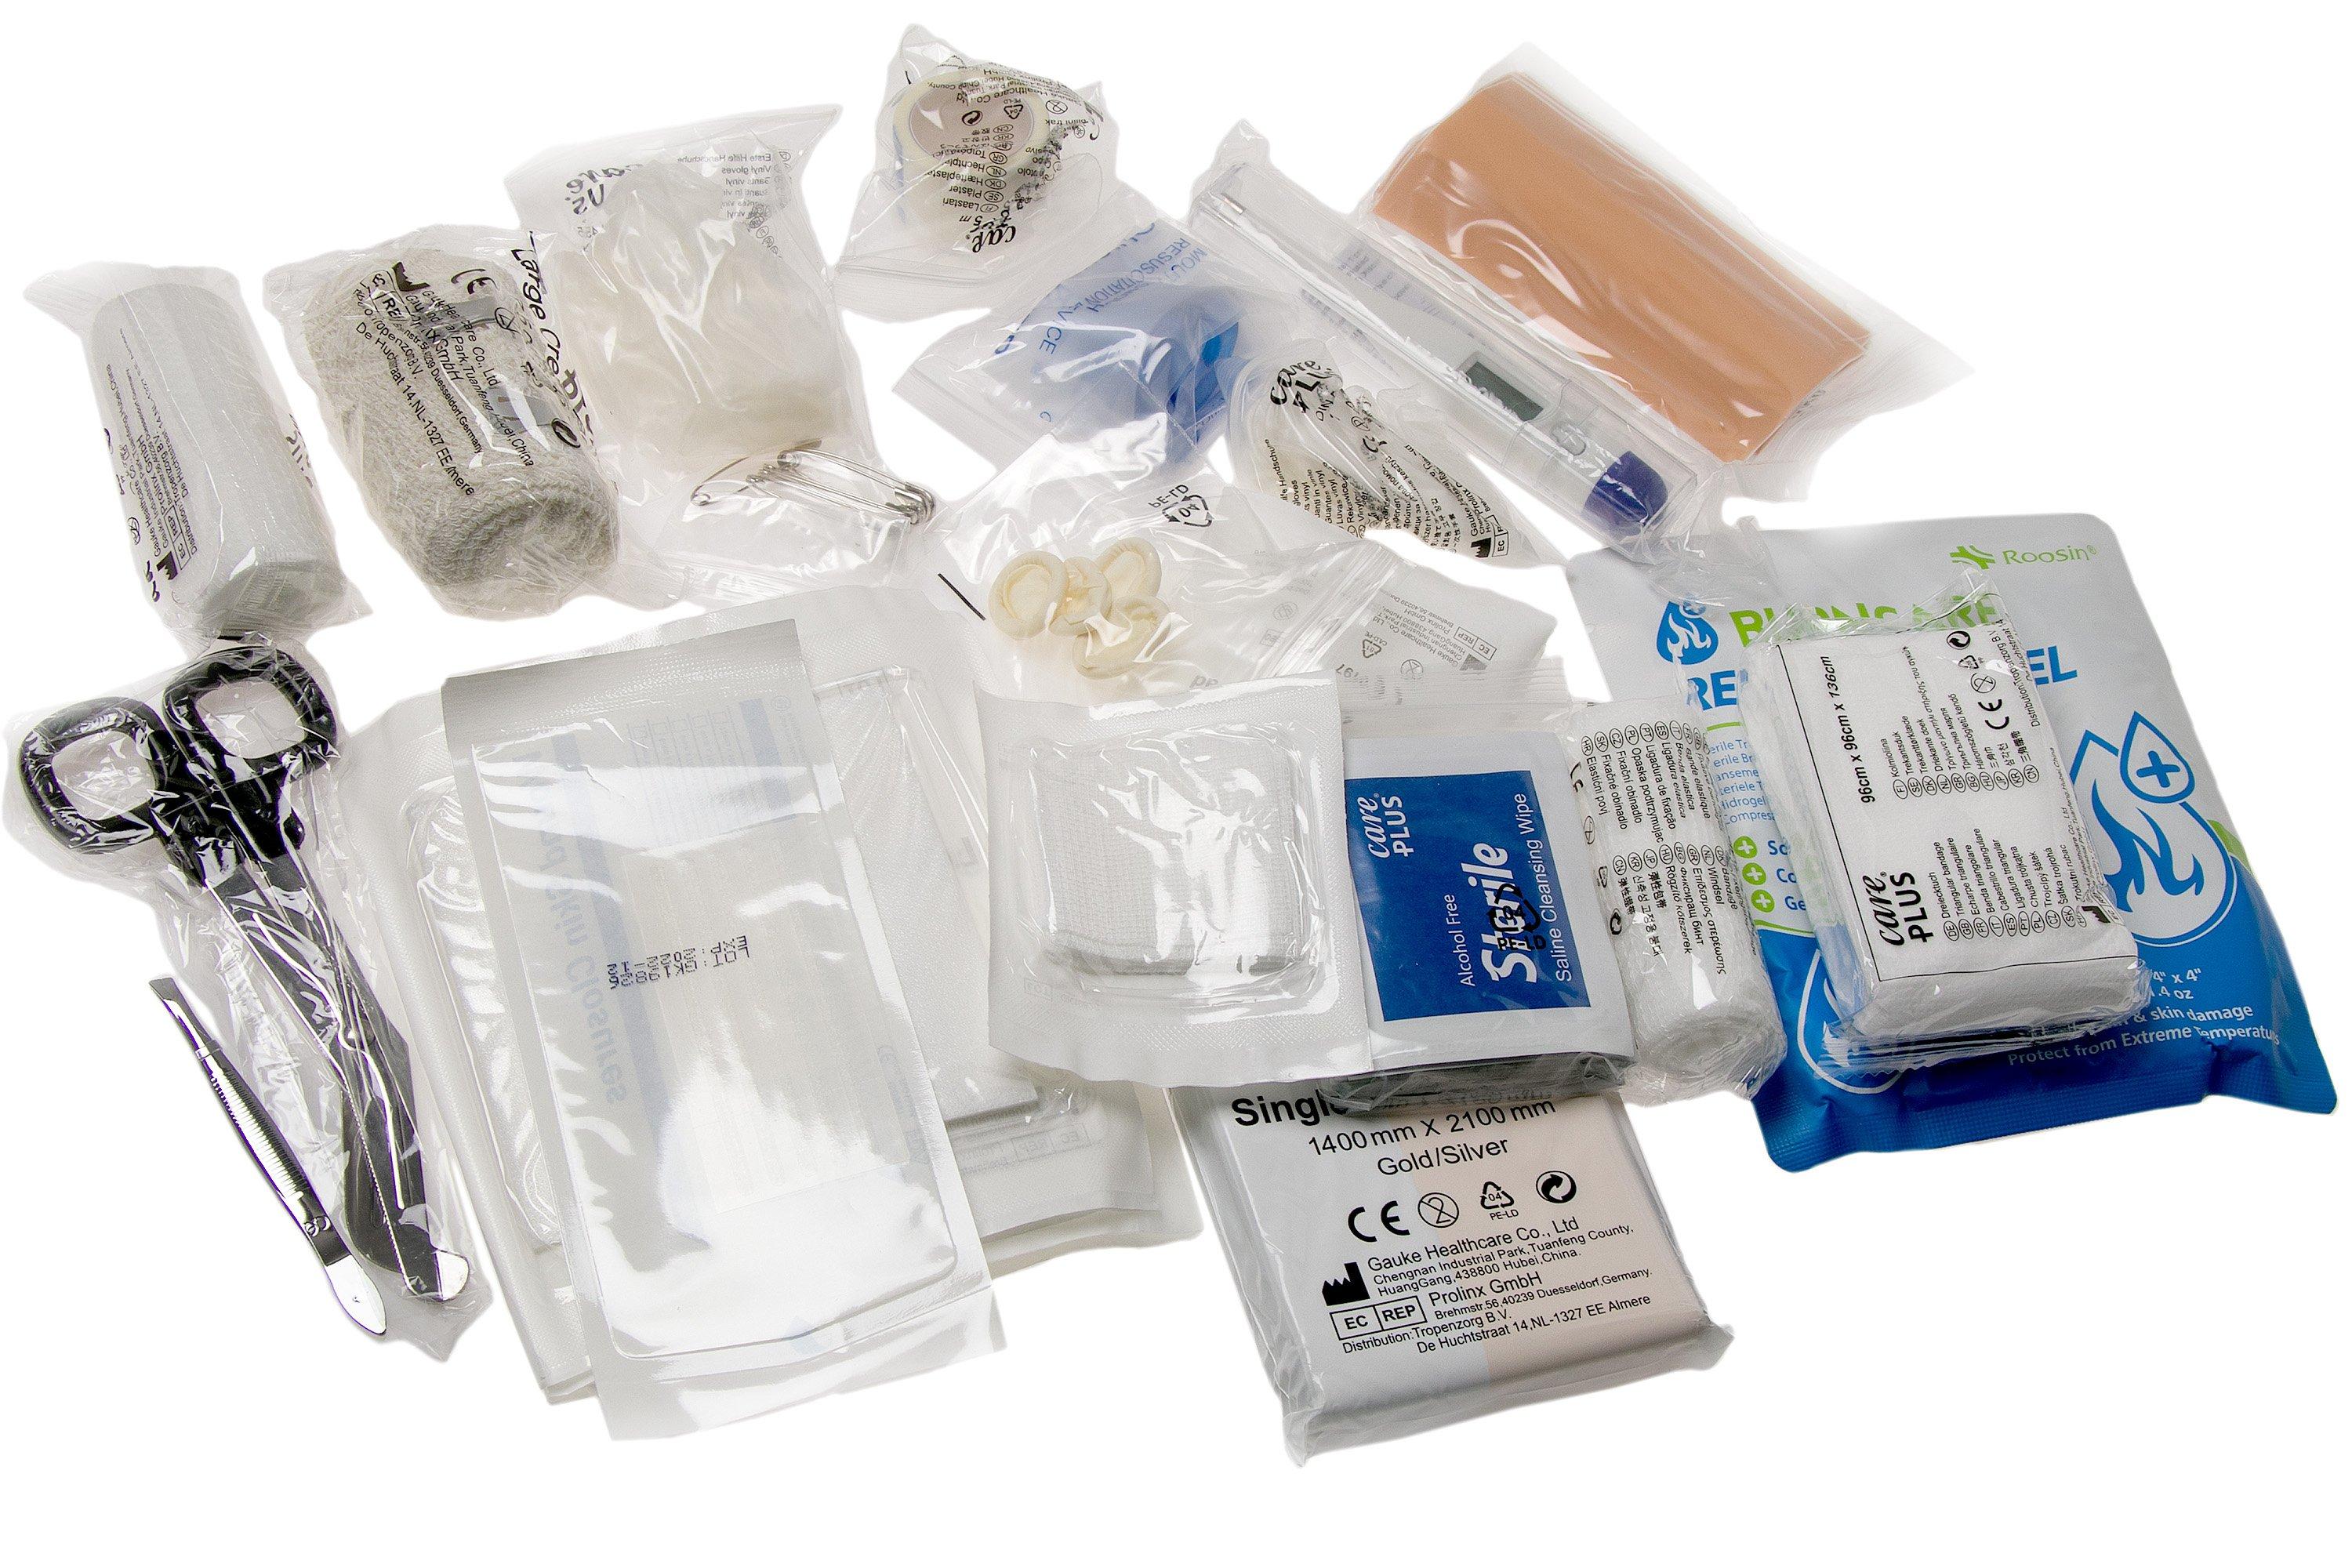 Care Plus First Aid Kit Waterproof, botiquín de primeros auxilios